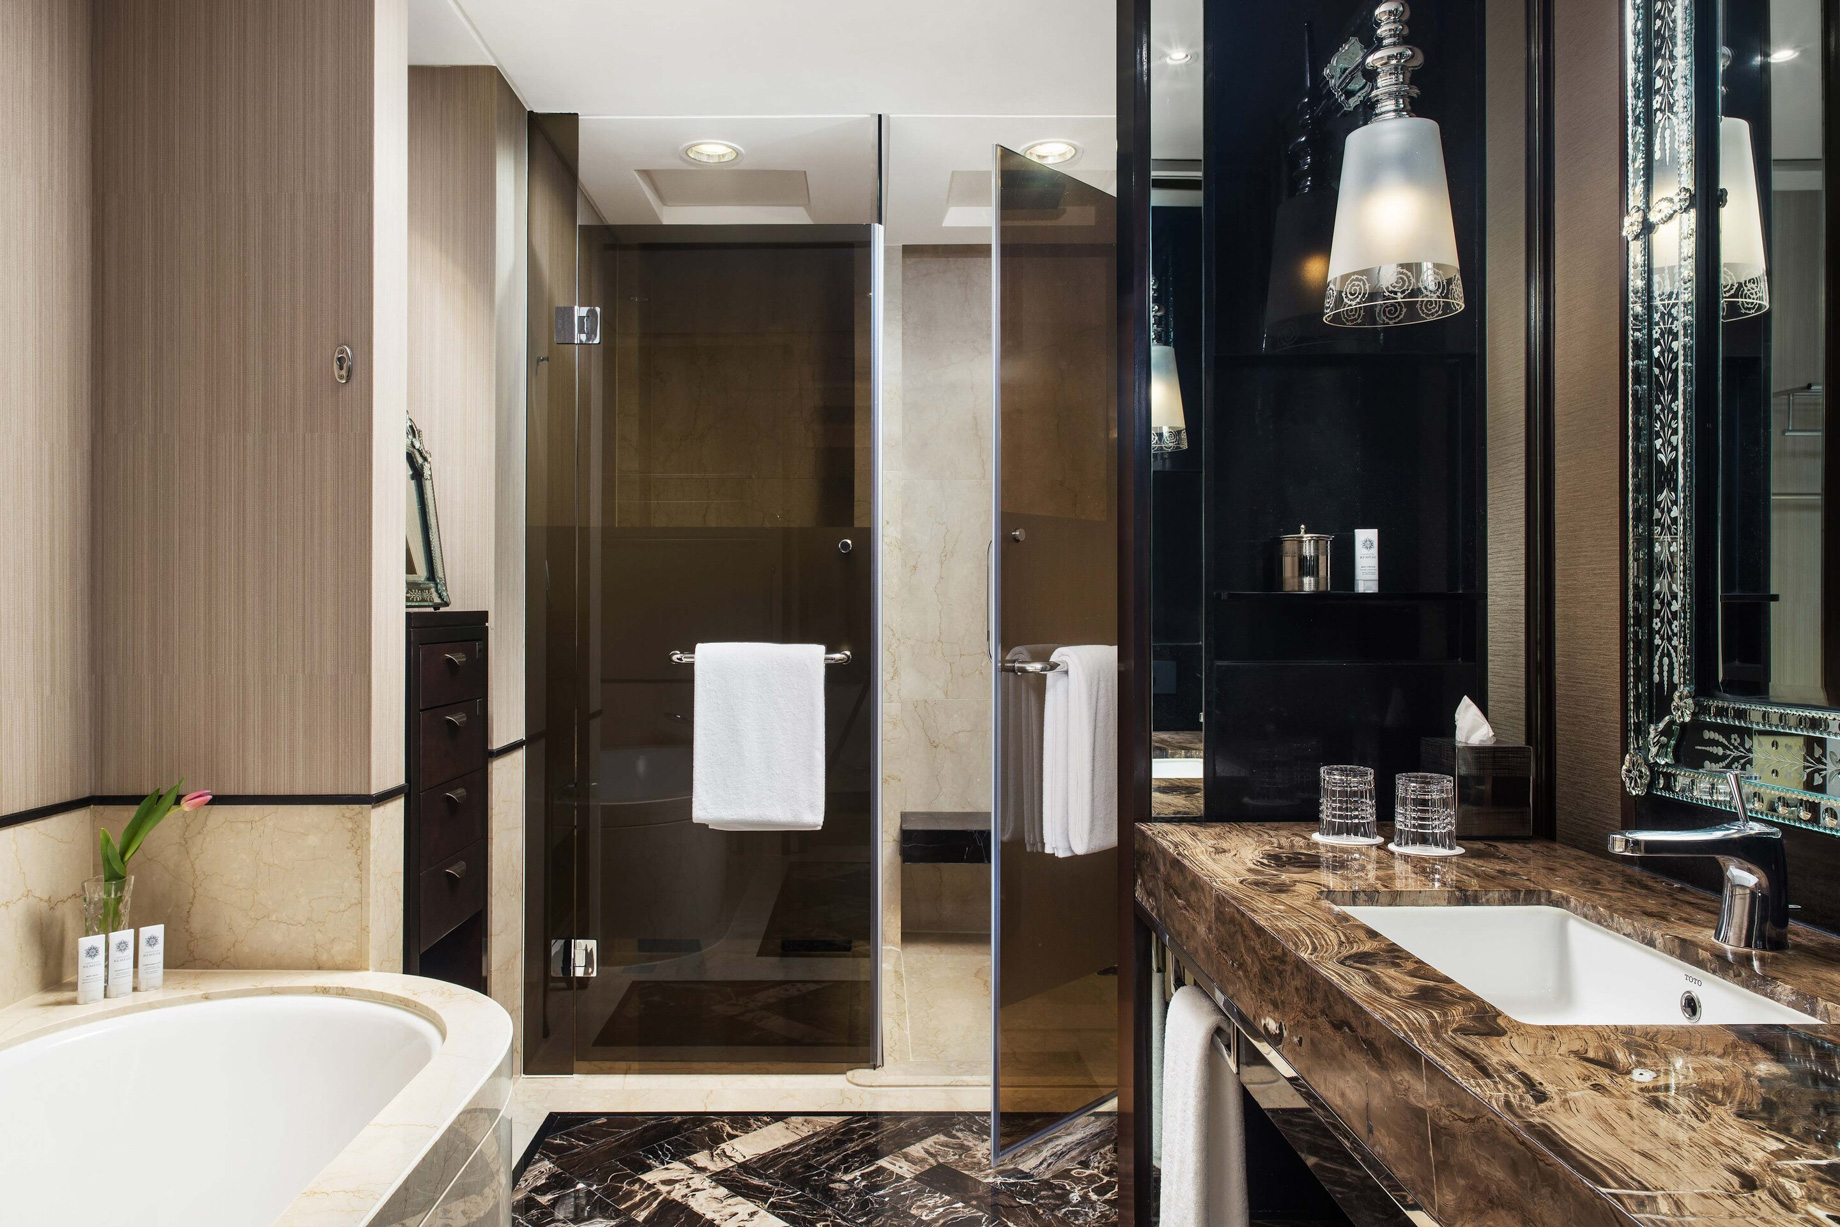 The St. Regis Mumbai Hotel - Mumbai, India - Guest Bathroom Shower & Tub